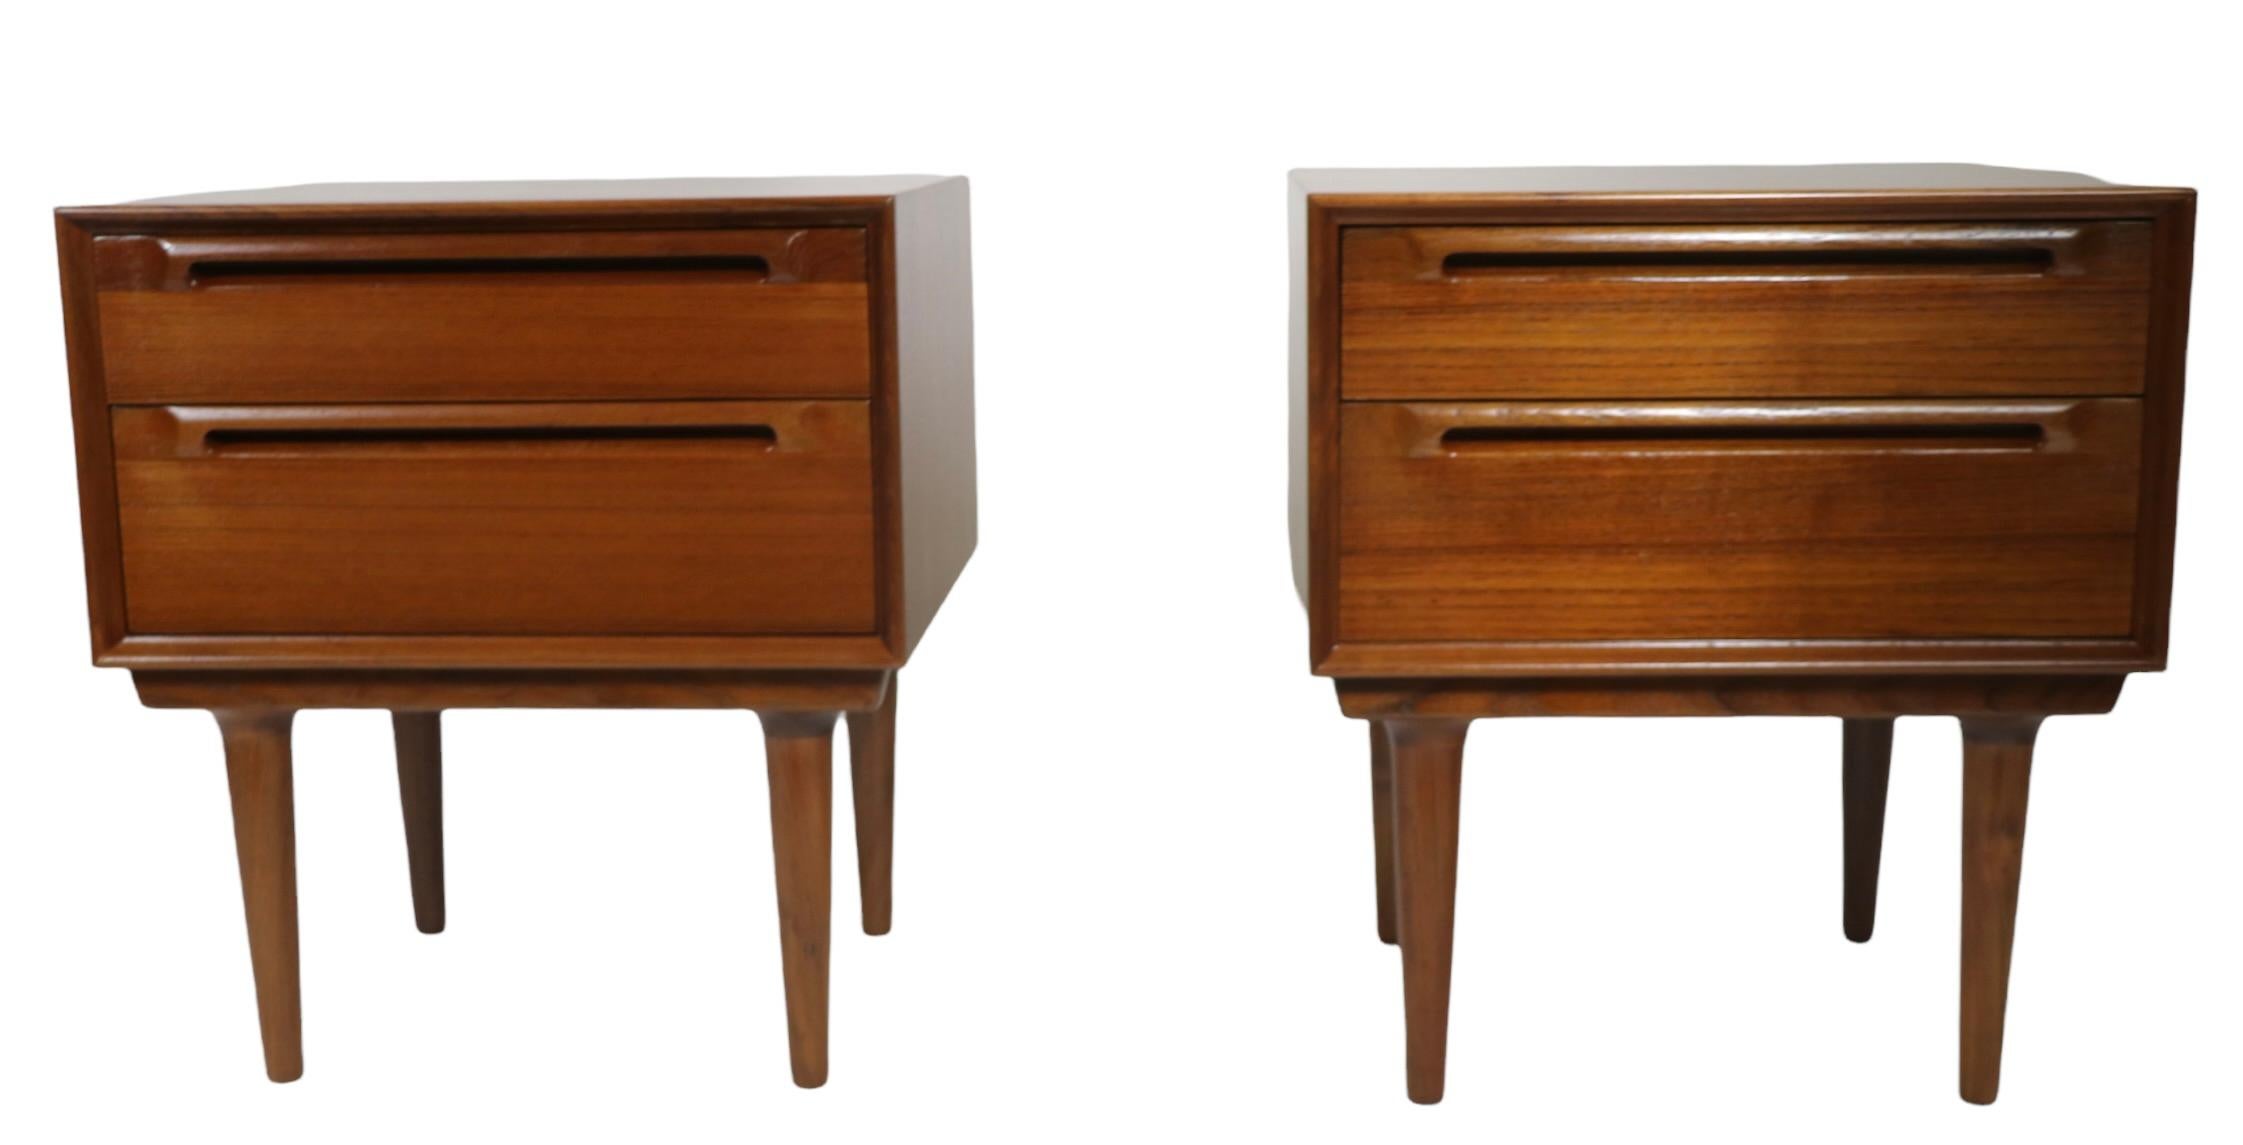 Exceptionnelle paire de tables de chevet danoises modernes du milieu du siècle dernier, attribuée à Sven Ellekaer. Les tables de nuit comportent deux tiroirs, le tiroir inférieur étant plus profond que le tiroir supérieur. Tous deux sont dans un